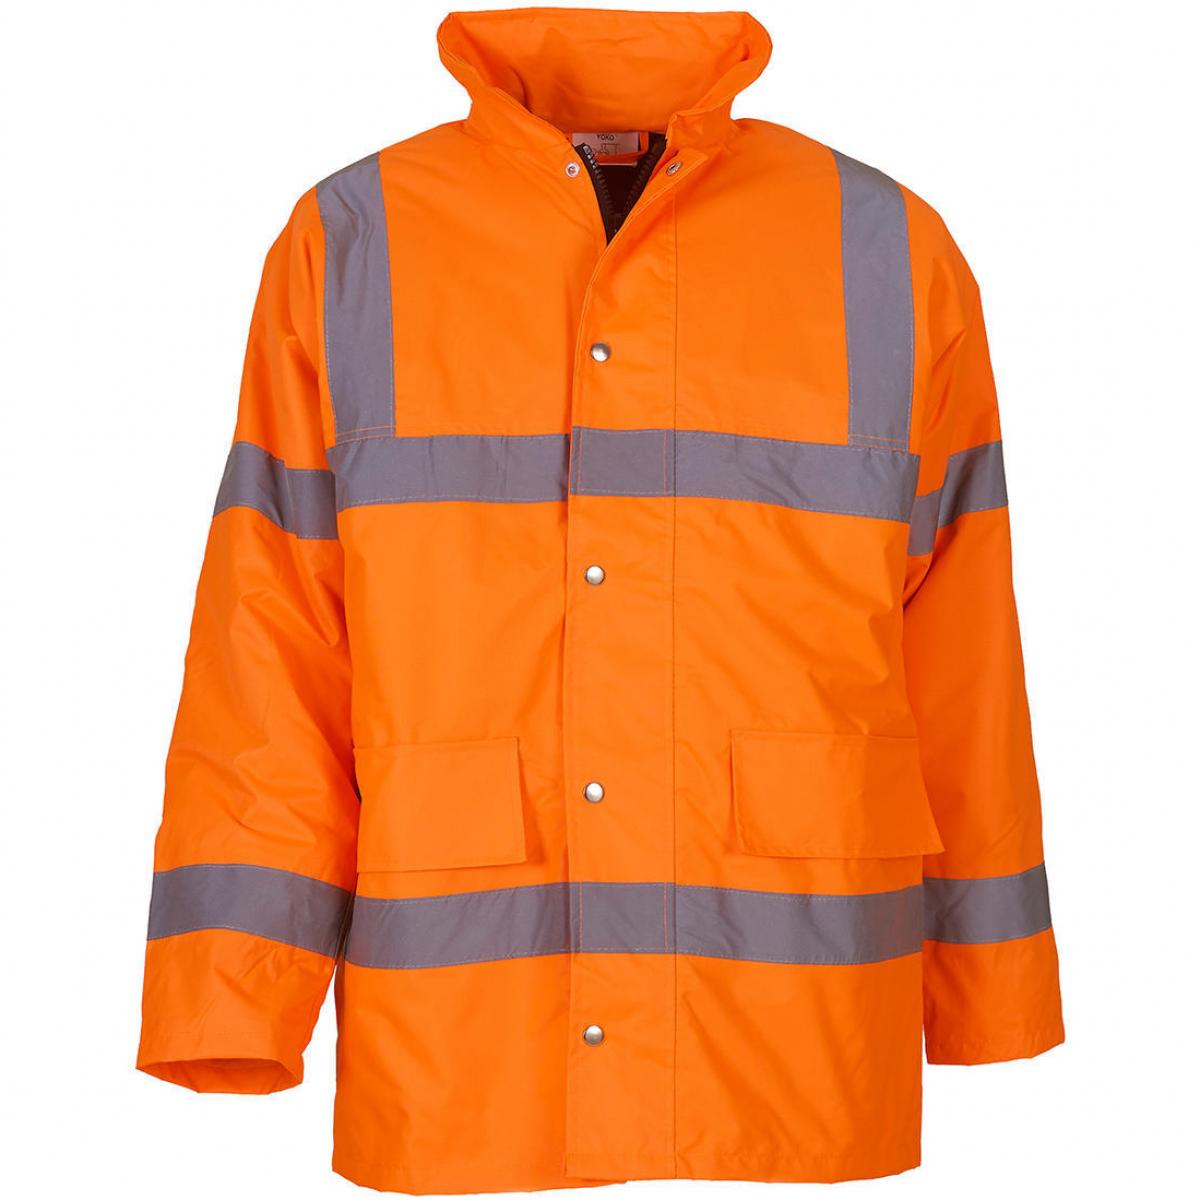 Hersteller: YOKO Herstellernummer: HVP300 Artikelbezeichnung: Fluo Classic Motorway Jacket - HiVis Arbeitsjacke Farbe: Fluo Orange